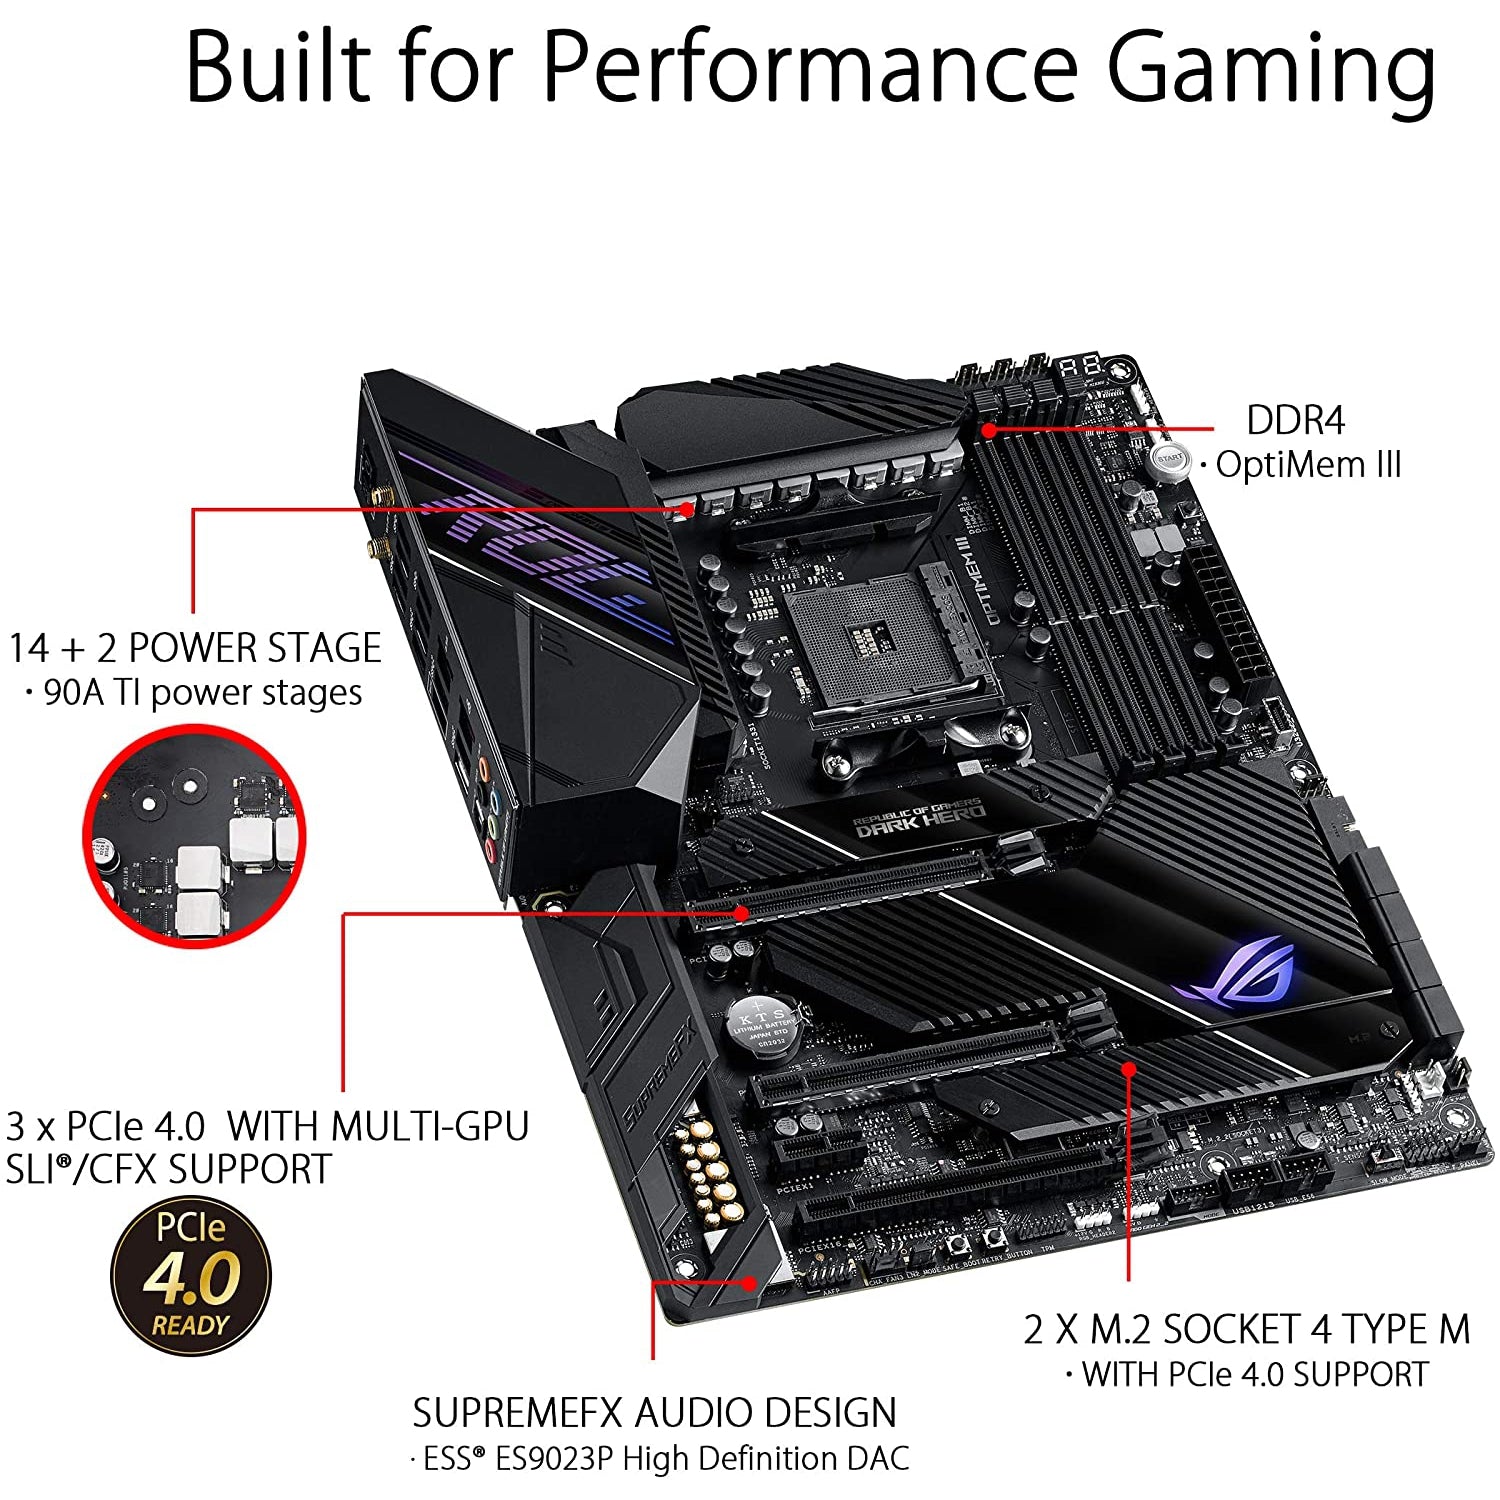 ASUS ROG Crosshair VIII Dark Hero AMD Ryzen ATX Gaming Motherboard